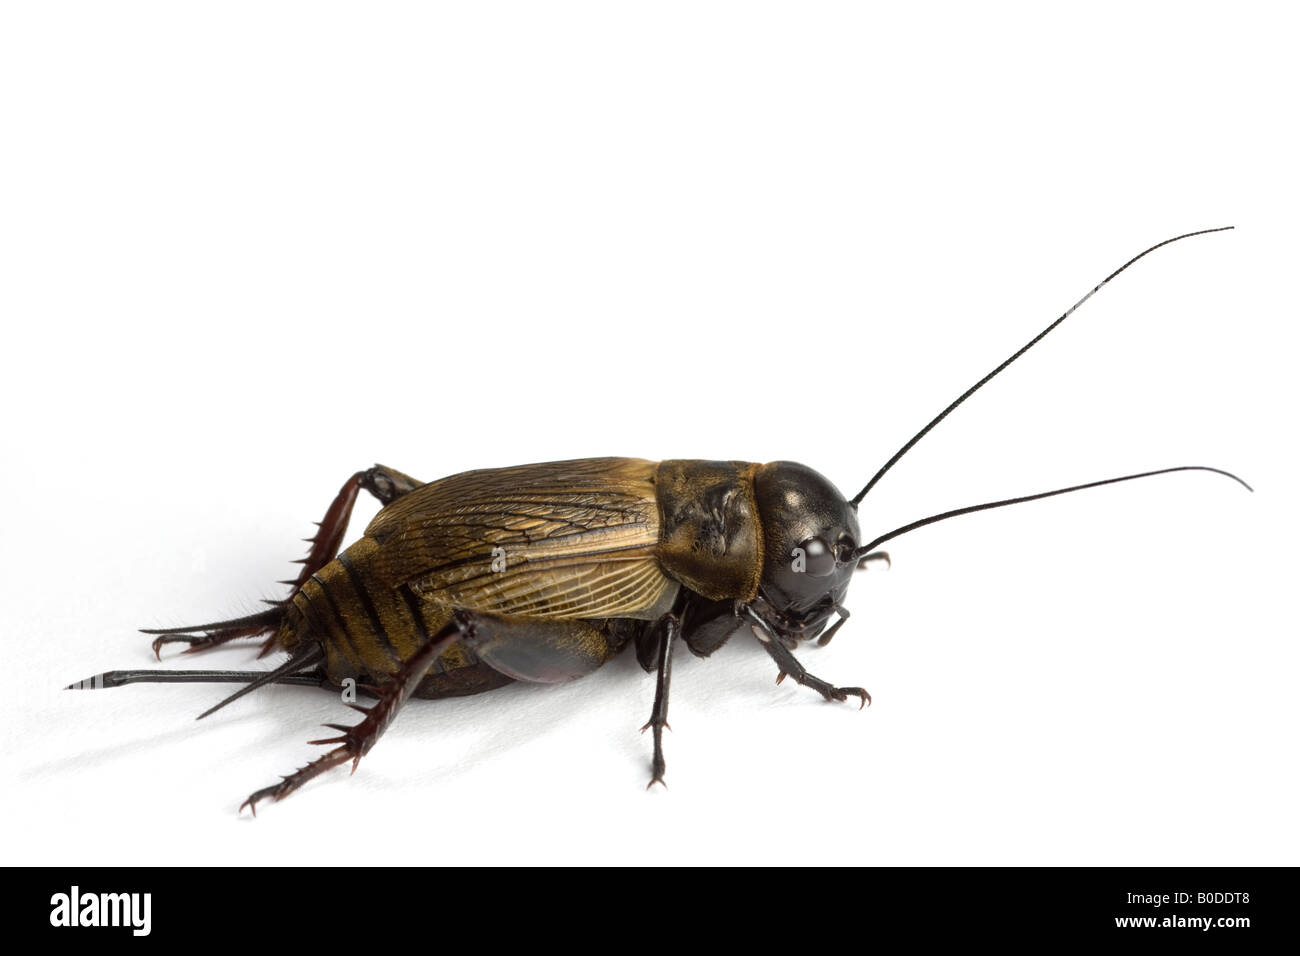 A female Field cricket (Gryllus campestris) photographed in the studio. Femelle de grillon champêtre photographiée en studio. Stock Photo